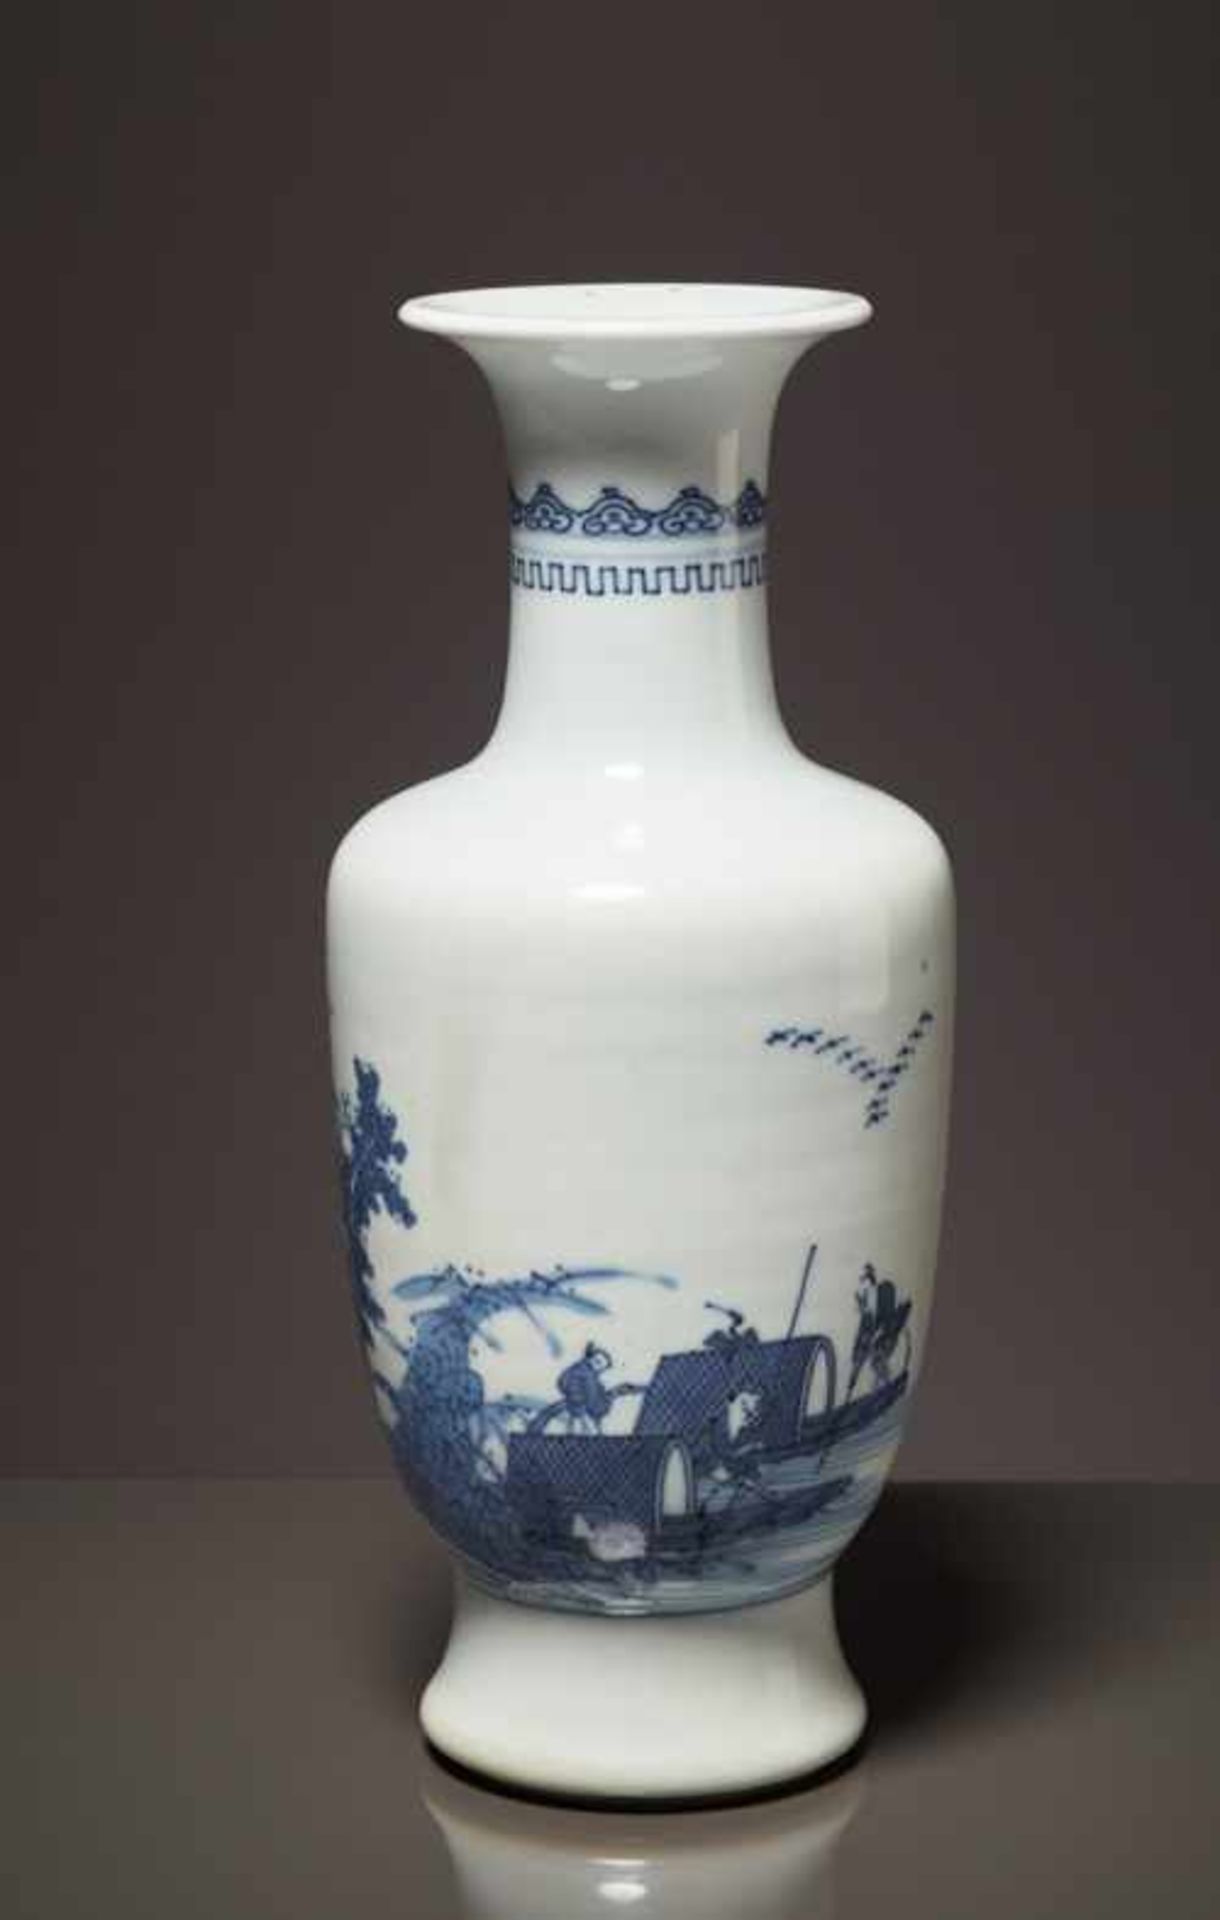 VASE MIT FISCHERKÄHNEN Blauweiß-Porzellan. China, späte Qing bis Republik, vermutlich 19. bis 1. - Image 2 of 8